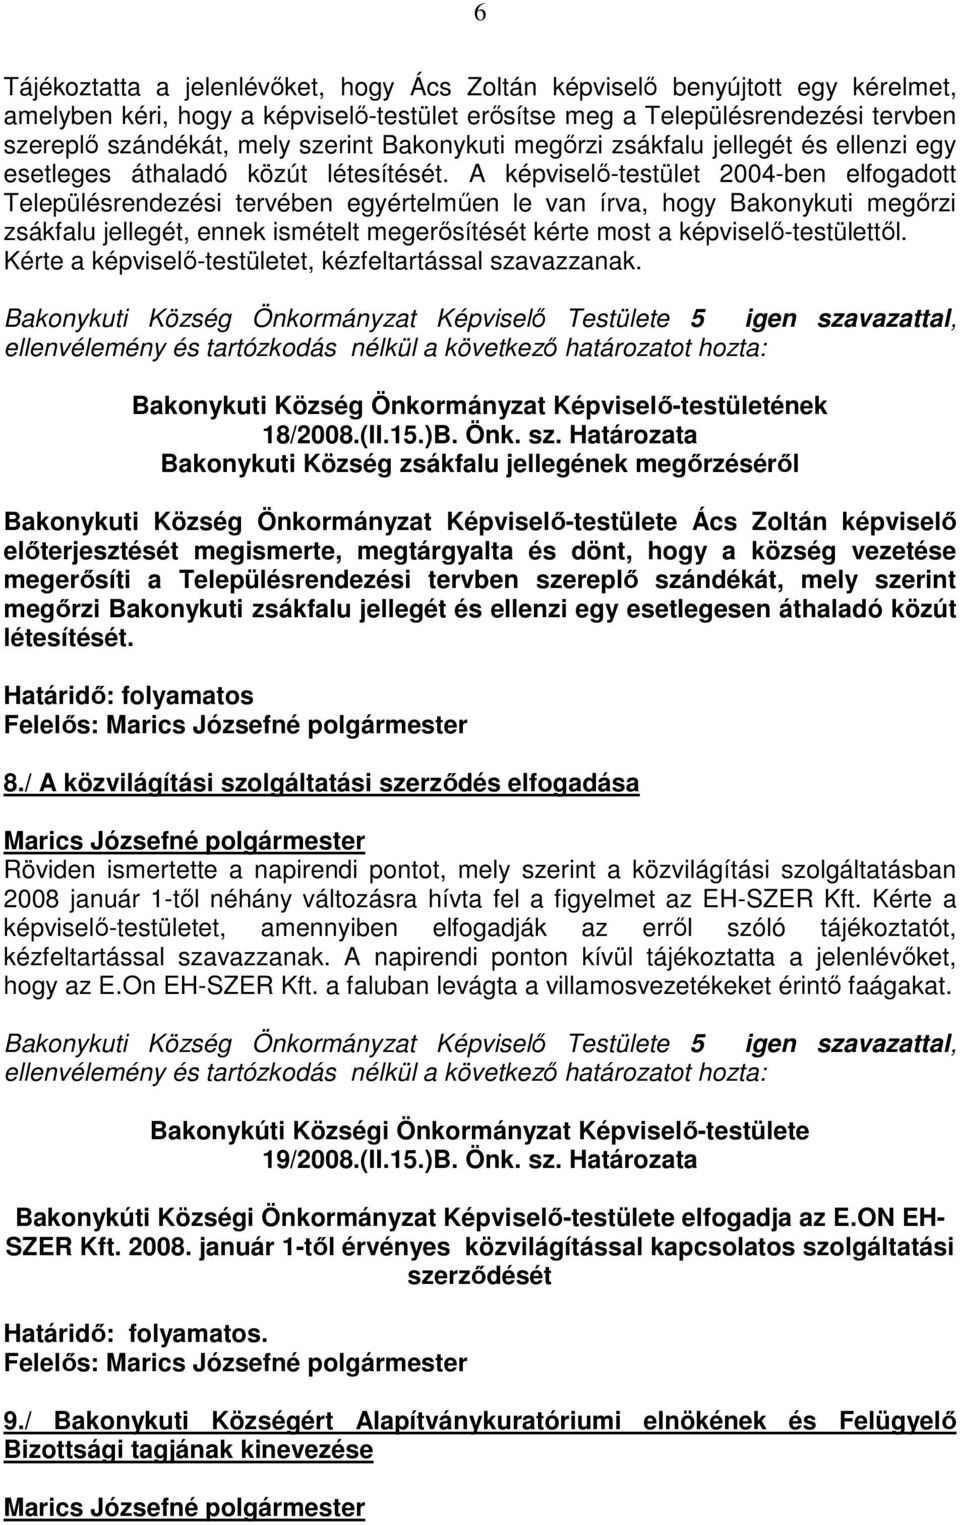 A képviselı-testület 2004-ben elfogadott Településrendezési tervében egyértelmően le van írva, hogy Bakonykuti megırzi zsákfalu jellegét, ennek ismételt megerısítését kérte most a